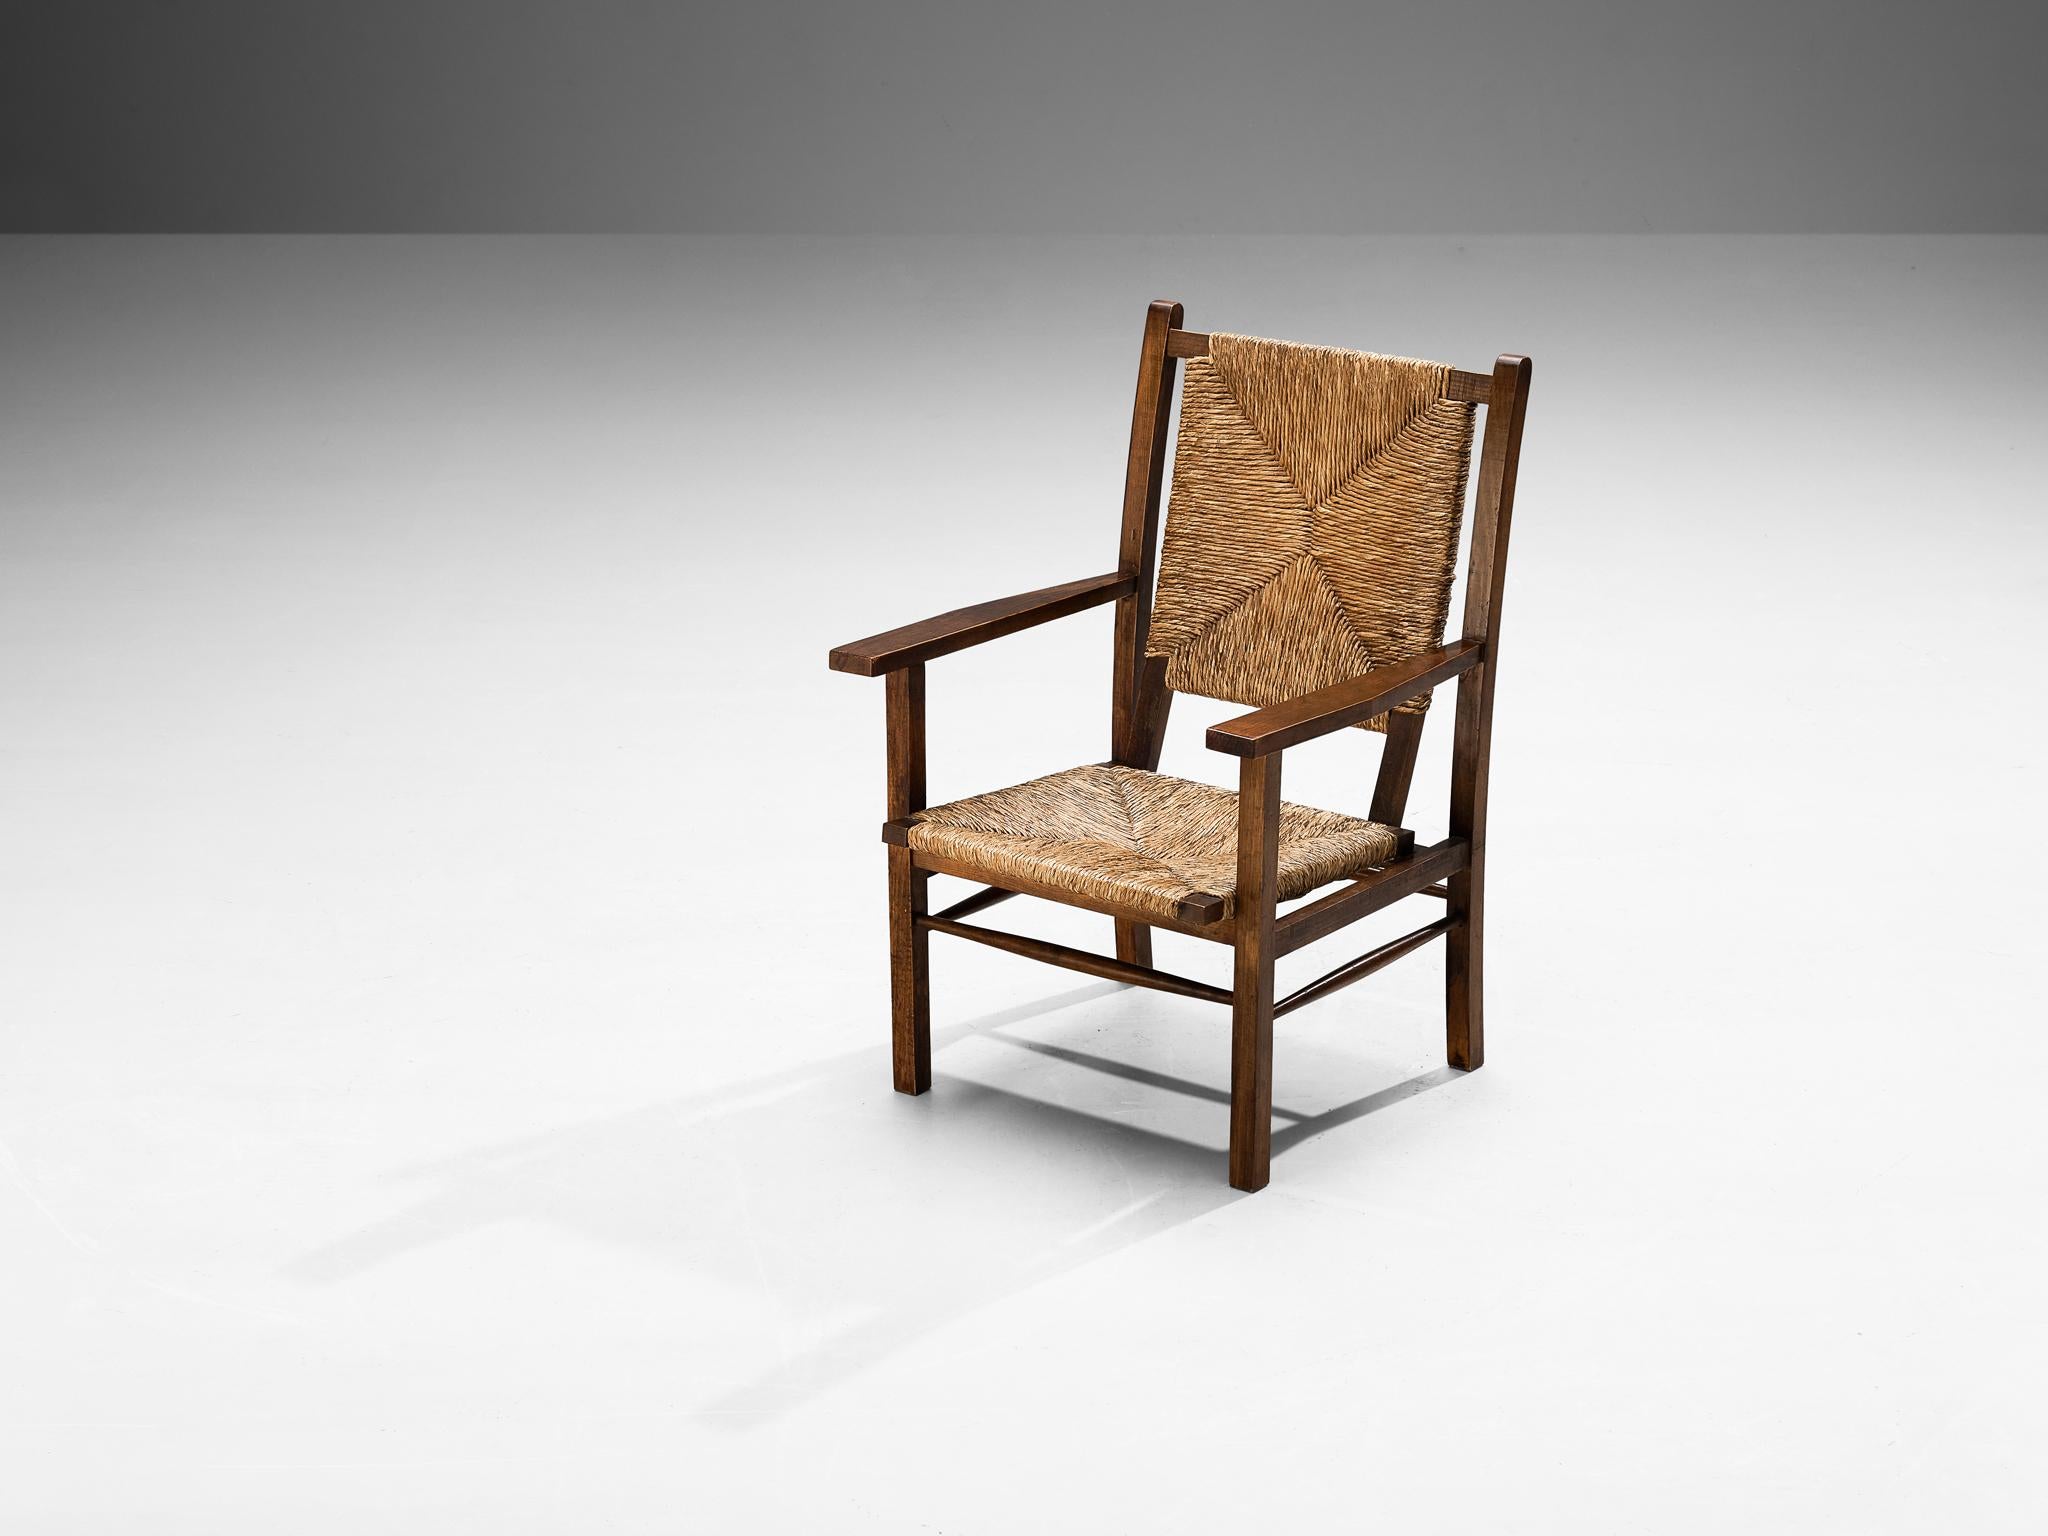 Fauteuil, pin teinté, paille, Espagne, années 1960

Cette chaise longue magnifiquement construite embrasse un caractère pastoral évolué avec une grande qualité d'élégance. Le cadre en bois présente une construction solide et ouverte avec des lignes